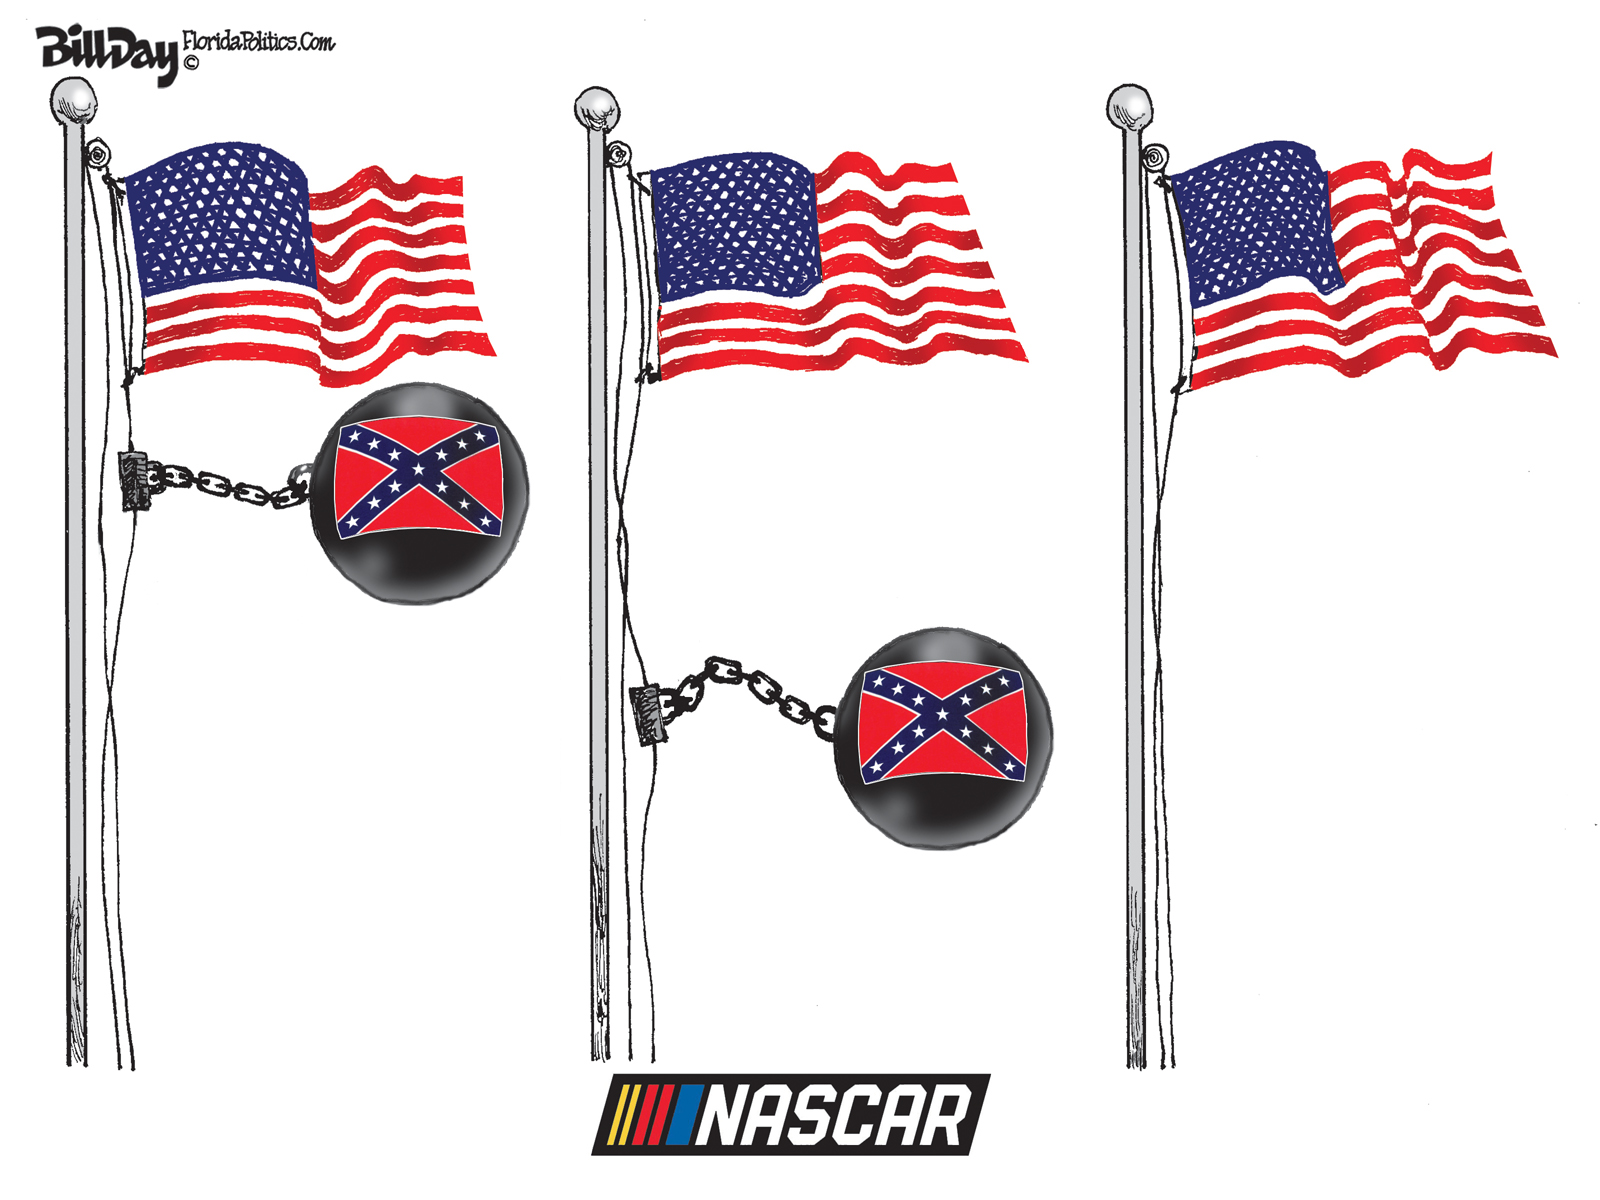 NASCAR, A Cartoon by Award-Winning Bill Day | Smart City Memphis